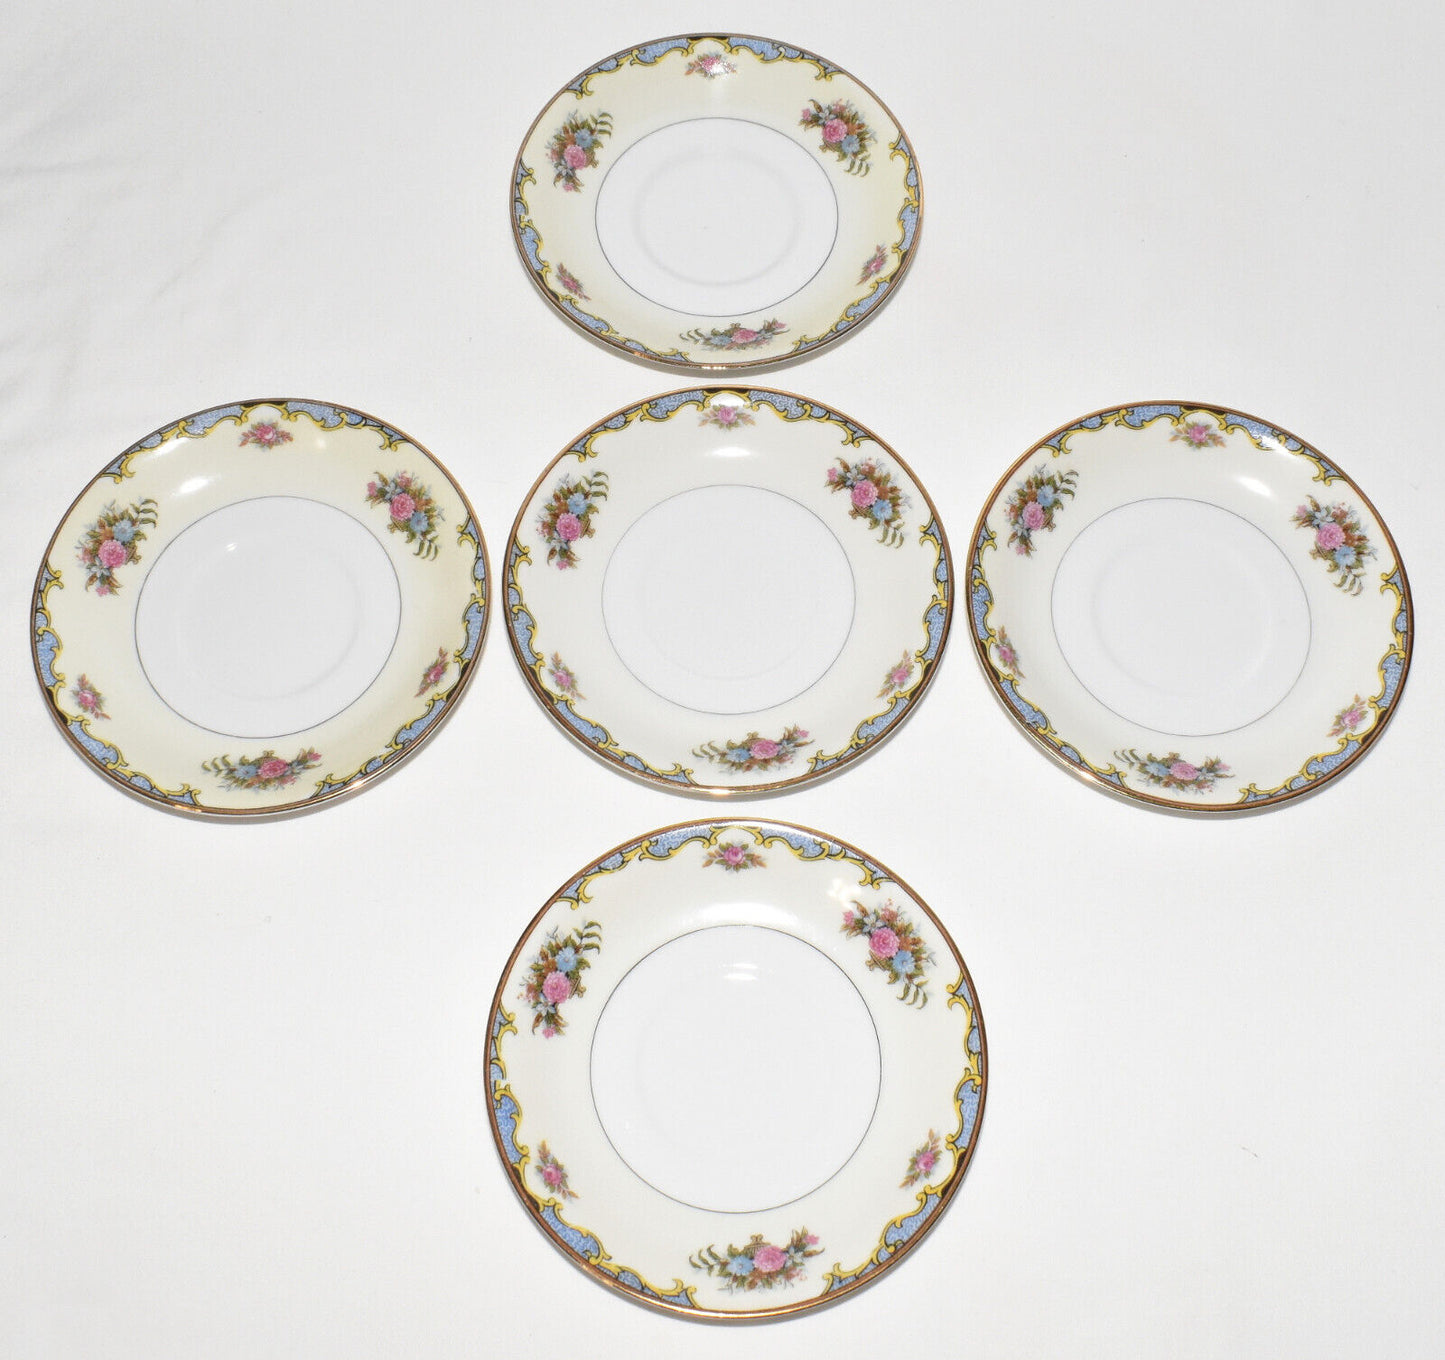 Vintage 5pc Set Noritake Vasona China 5.5" Saucers Plates Elegant Floral Pattern